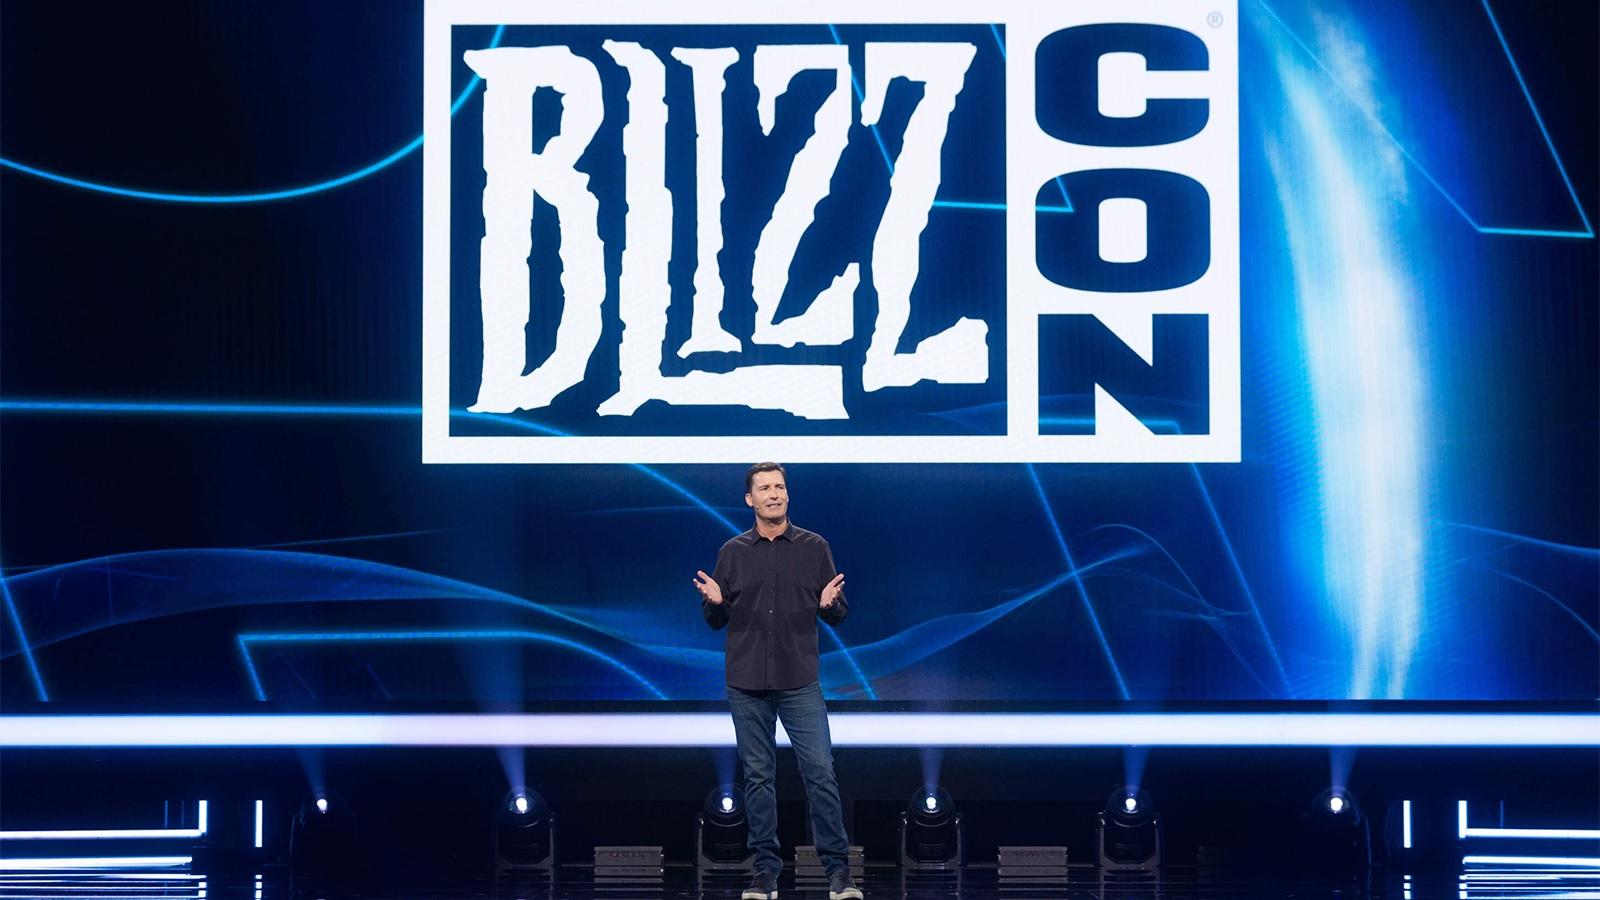 Mike Ybarra, président de Blizzard